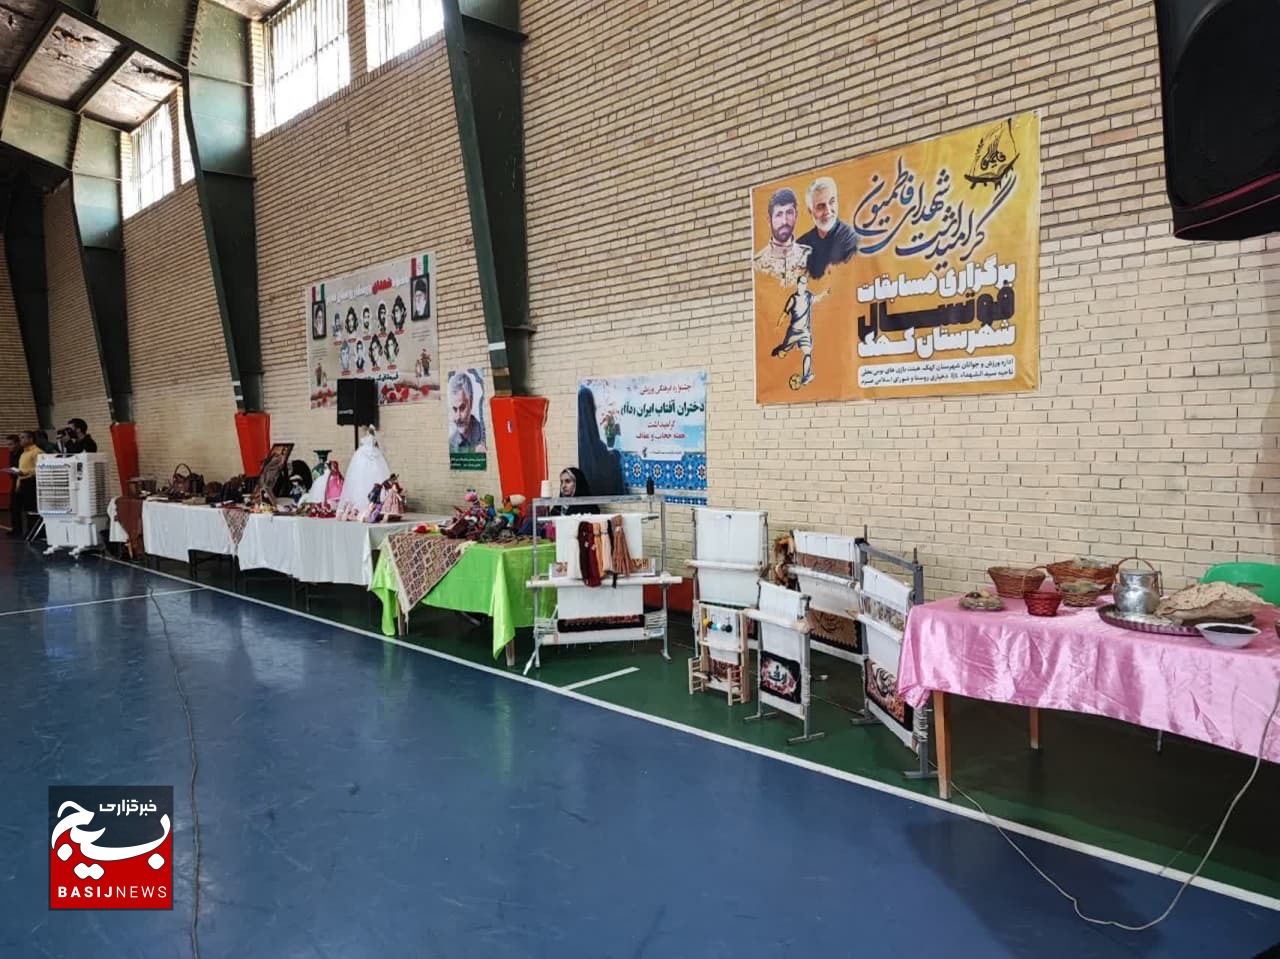 جشنواره فرهنگی ورزشی دختران آفتاب در روستای صرم قم/ برپایی نمایشگاه مشاغل بانوان روستایی